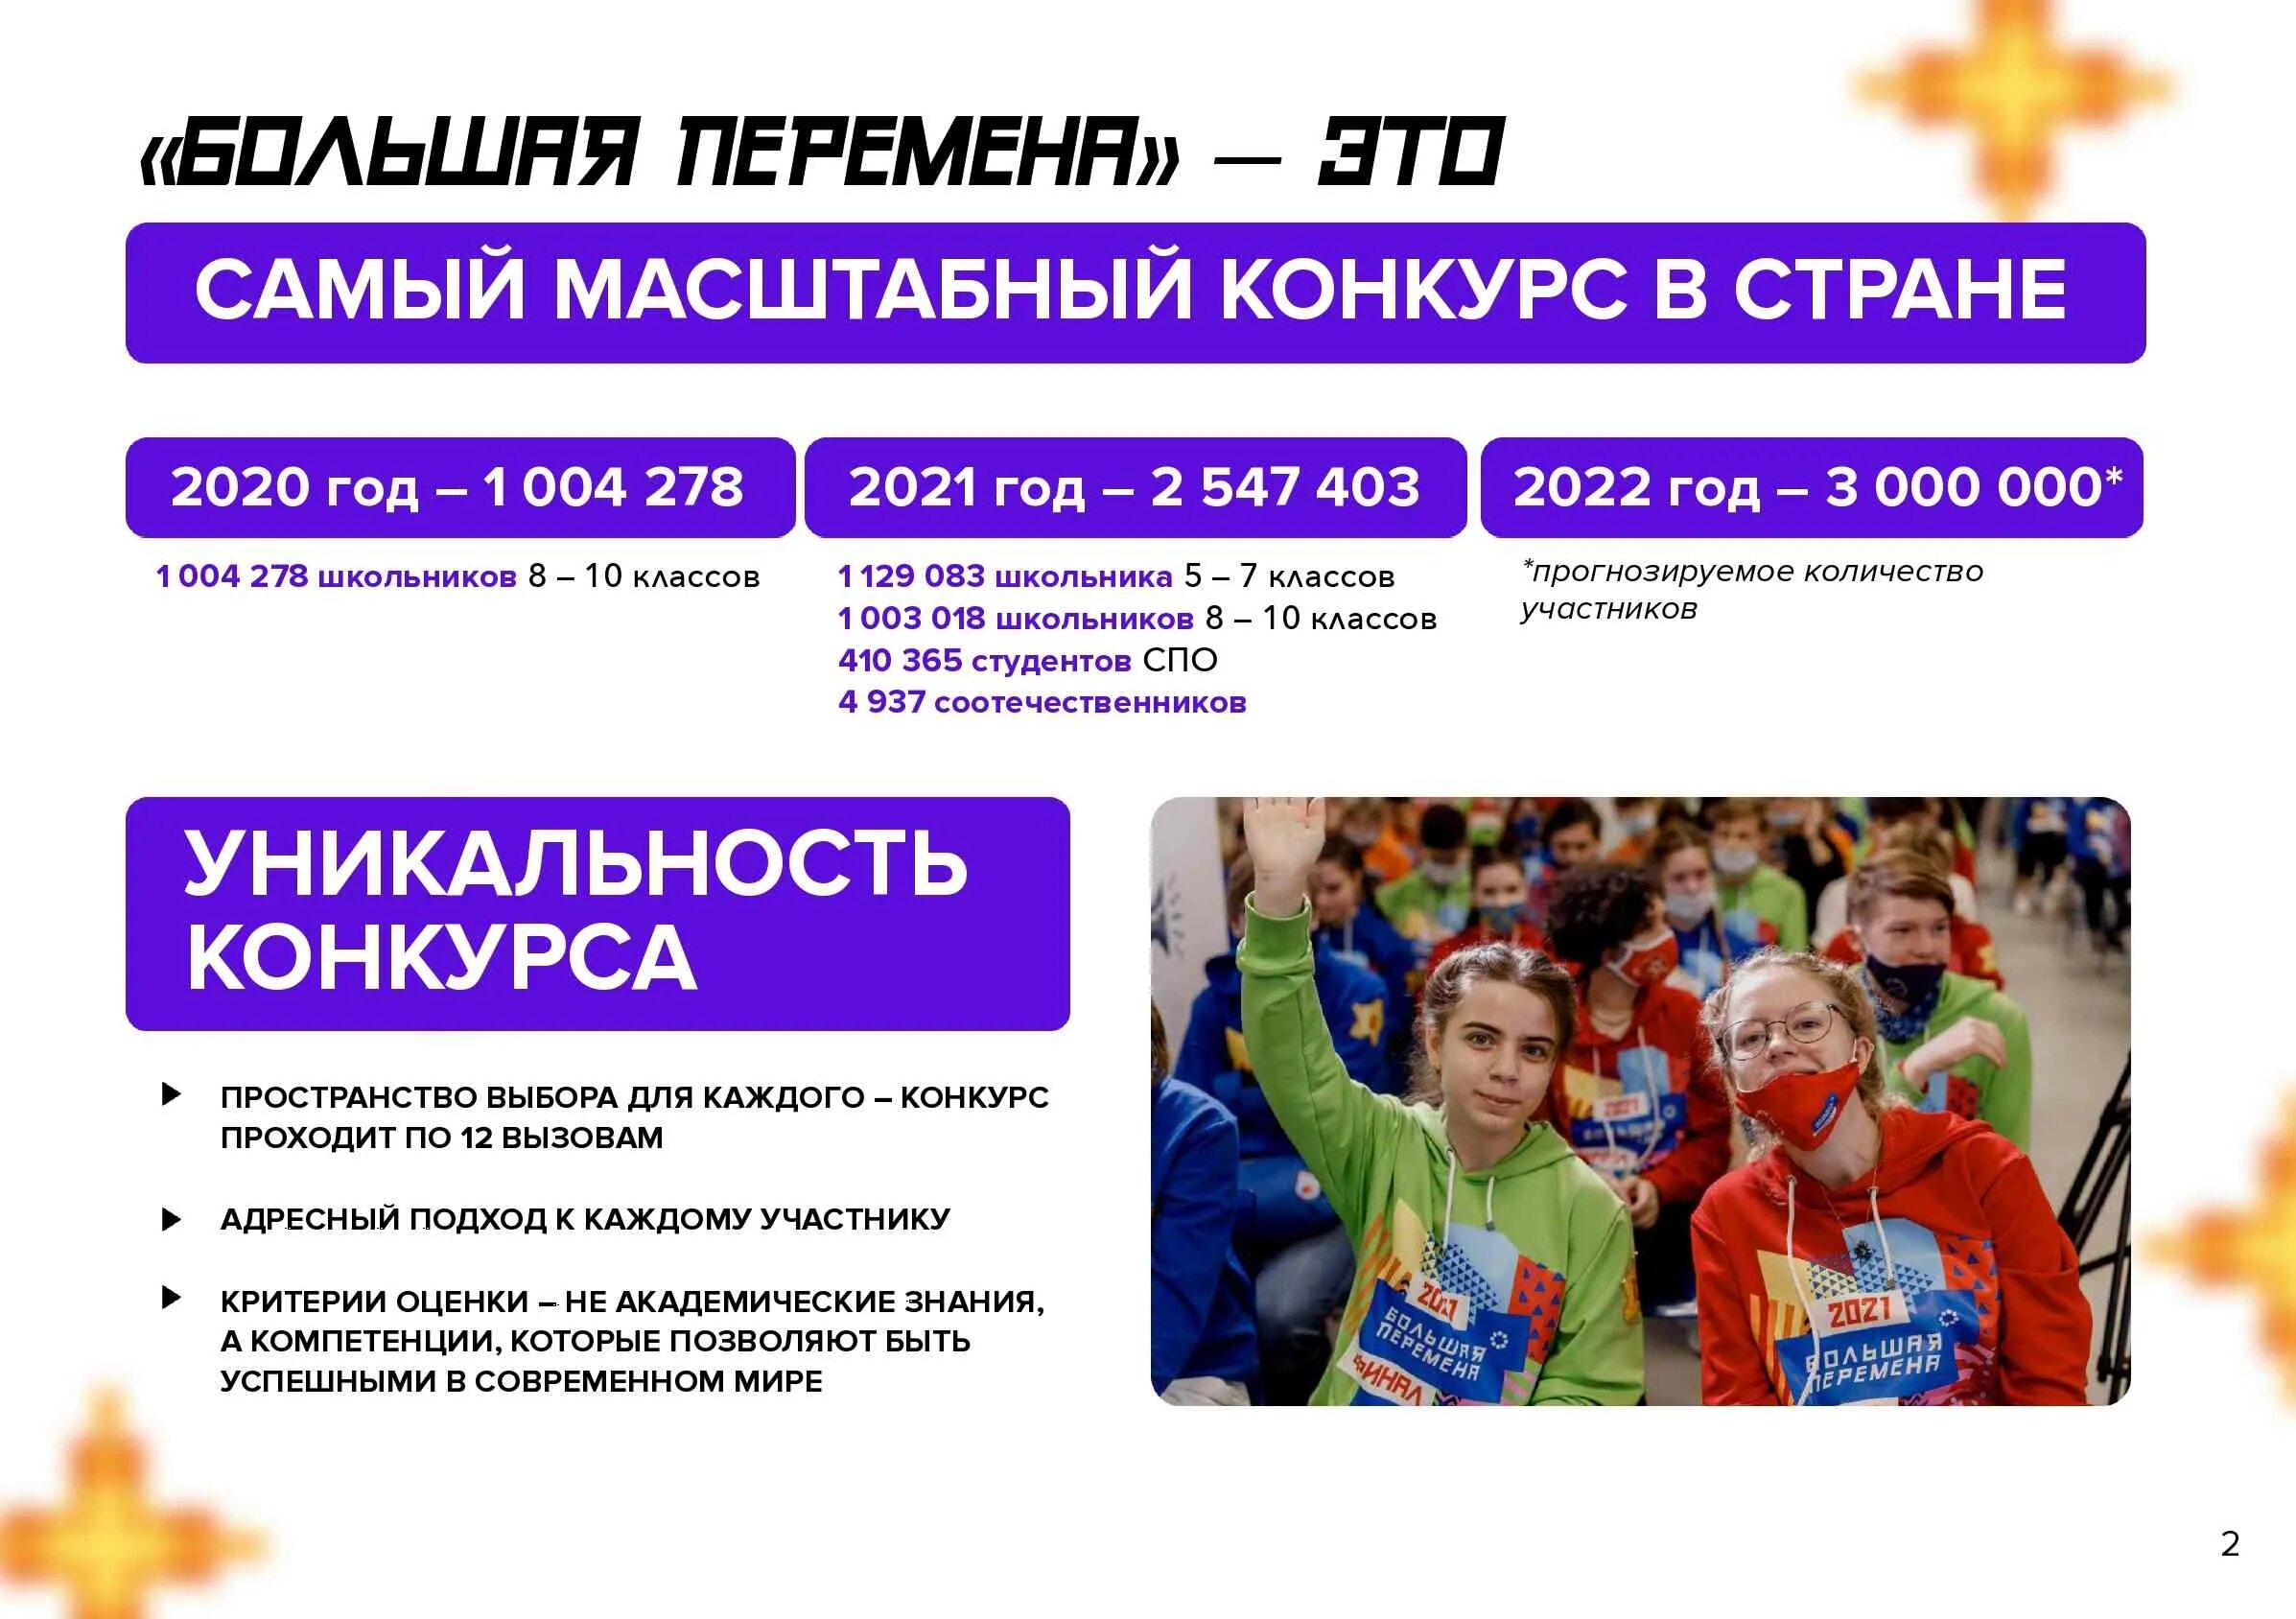 Большая перемена что надо делать. Всероссийский конкурс большая перемена 2022. Большая перемена конкурс для школьников 2022. Проект большая перемена 2022. Проект большая перемена для школьников что это такое.